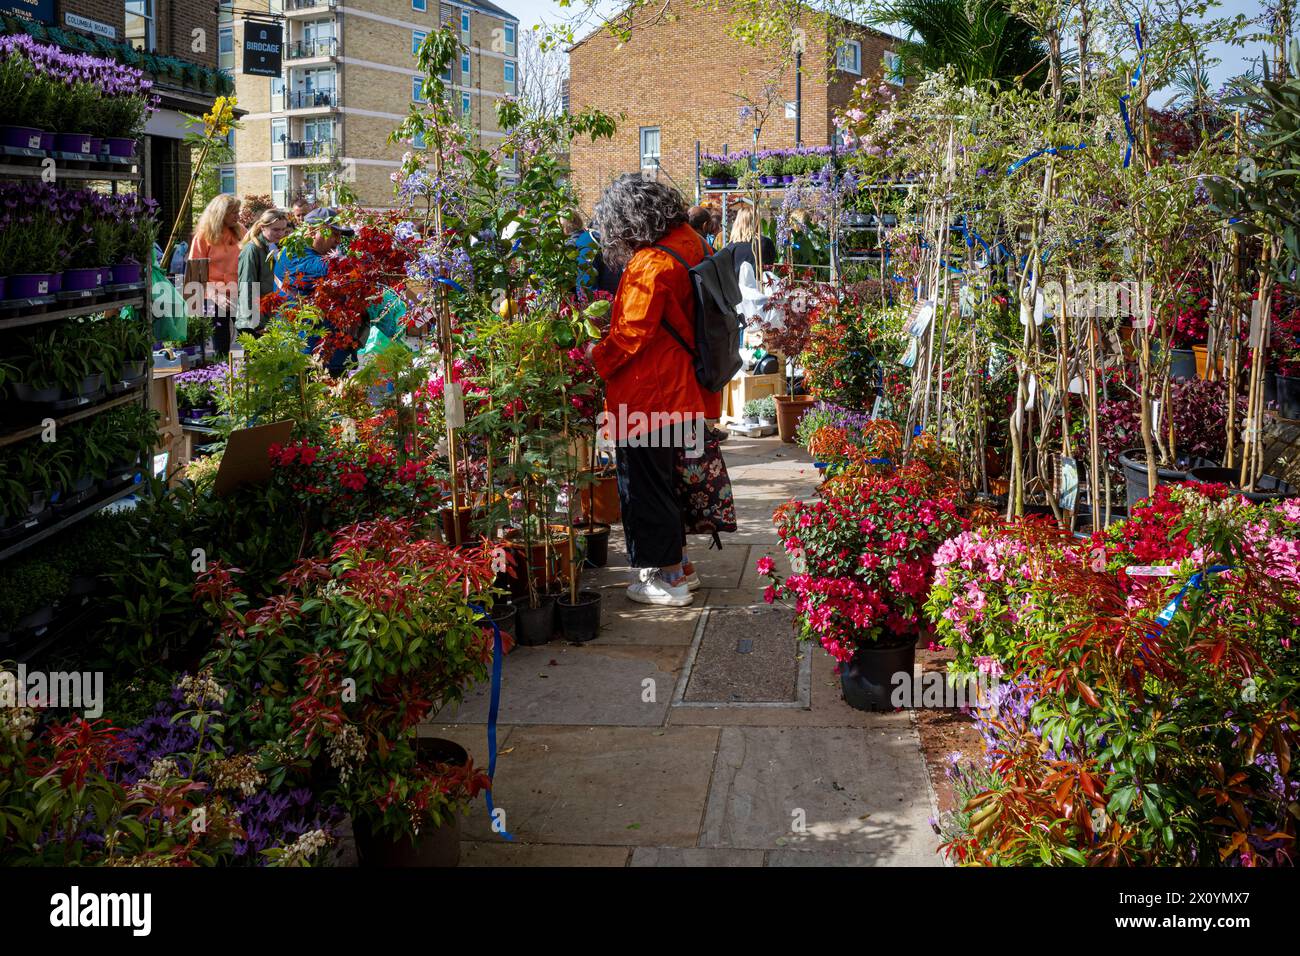 Columbia Road Flower Market London - un marché très populaire le dimanche dans l'est de Londres Banque D'Images